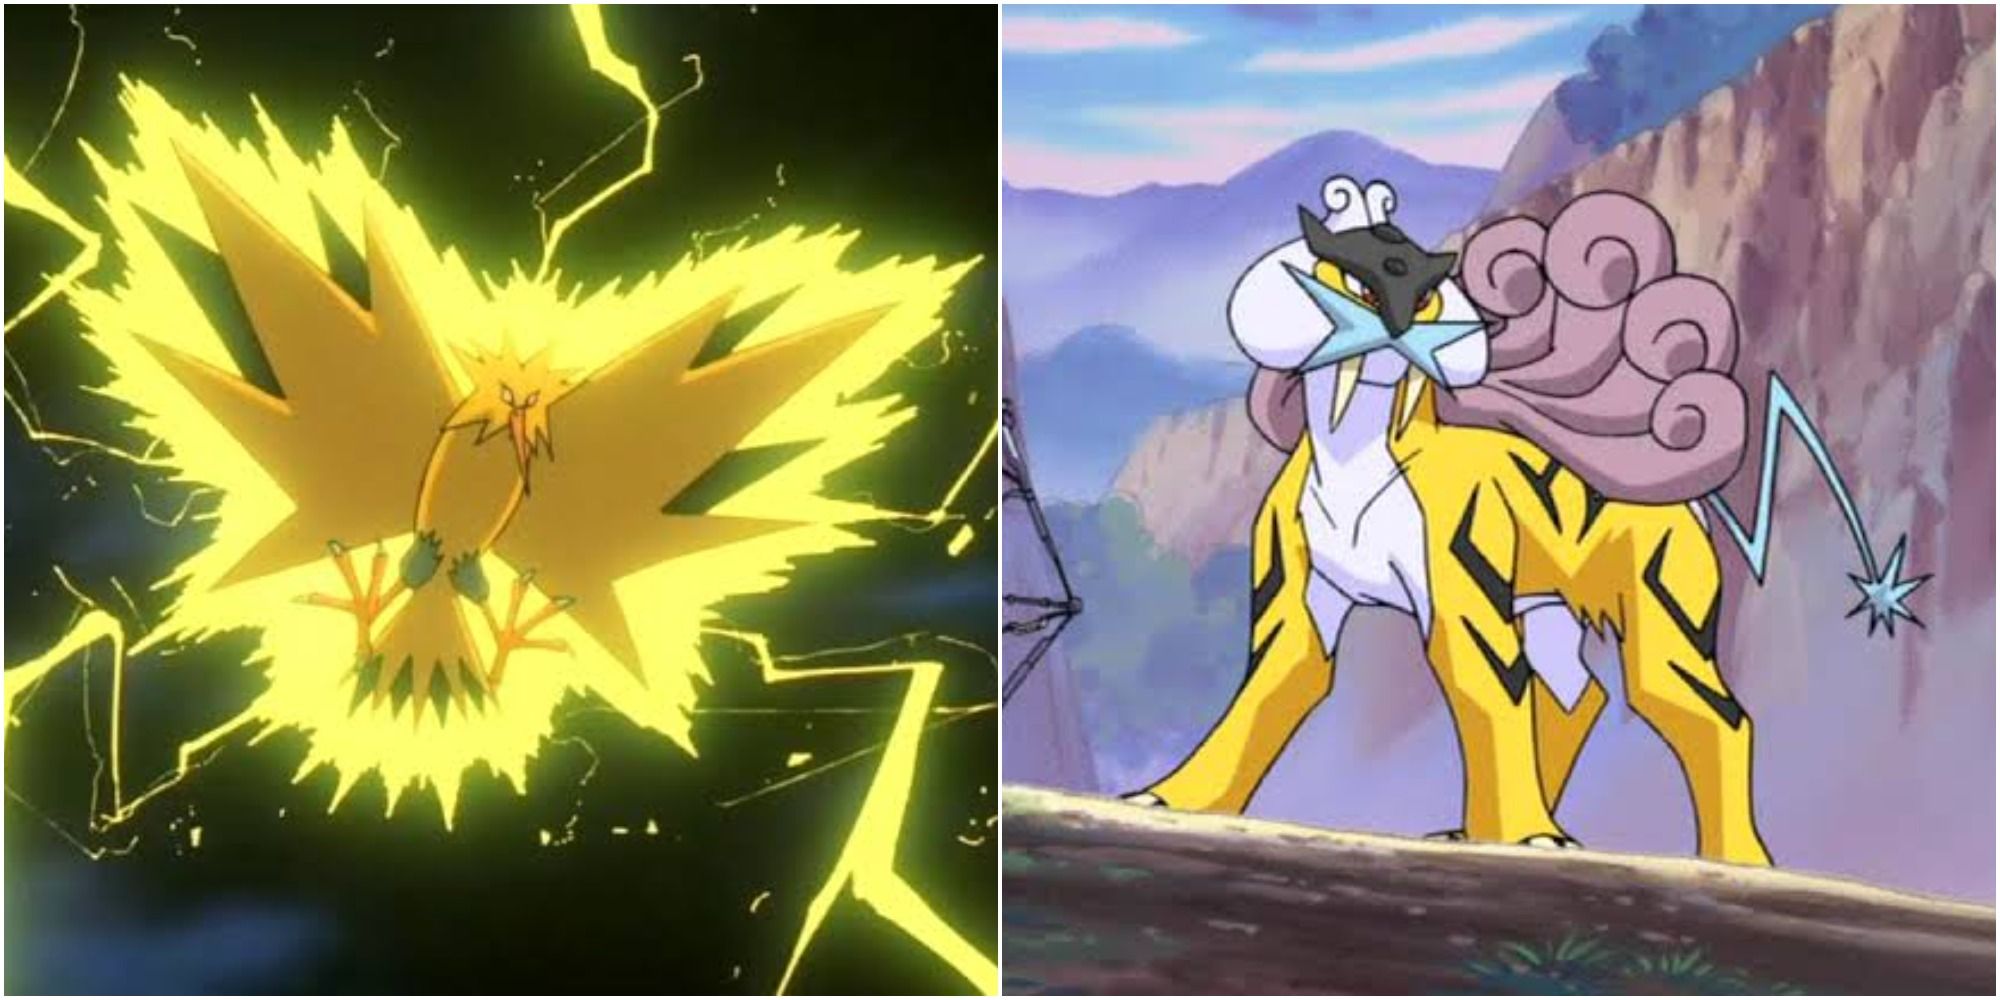 Zapdos Raikou Electric Type Legendary Pokemon